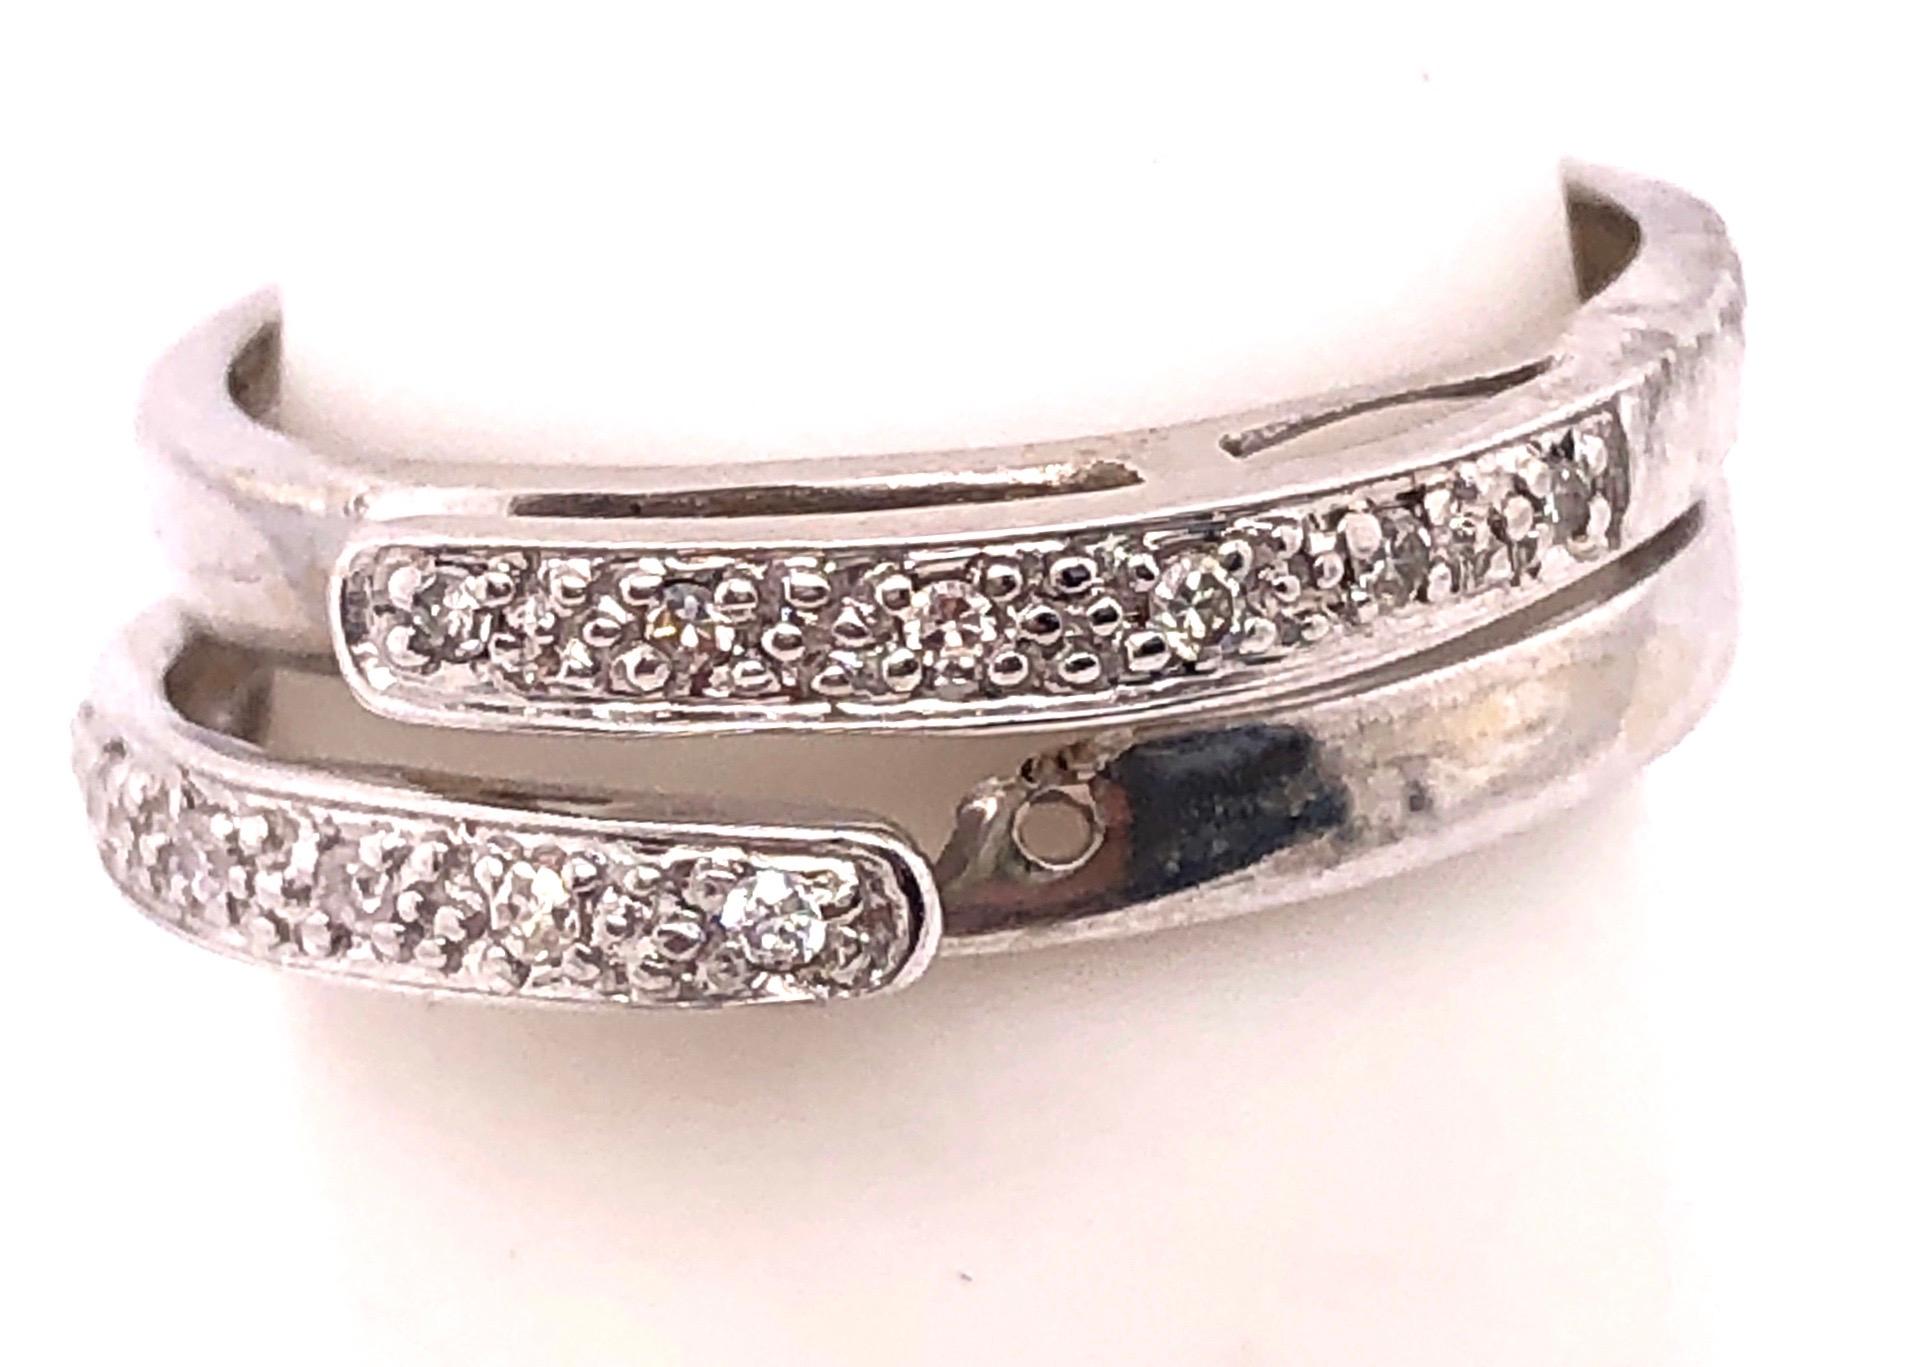 14 Karat Weißgold Fashion Ring mit Diamanten 0,25 Total Diamond Weight.
Größe 5.5 
2.75 Gramm Gesamtgewicht.